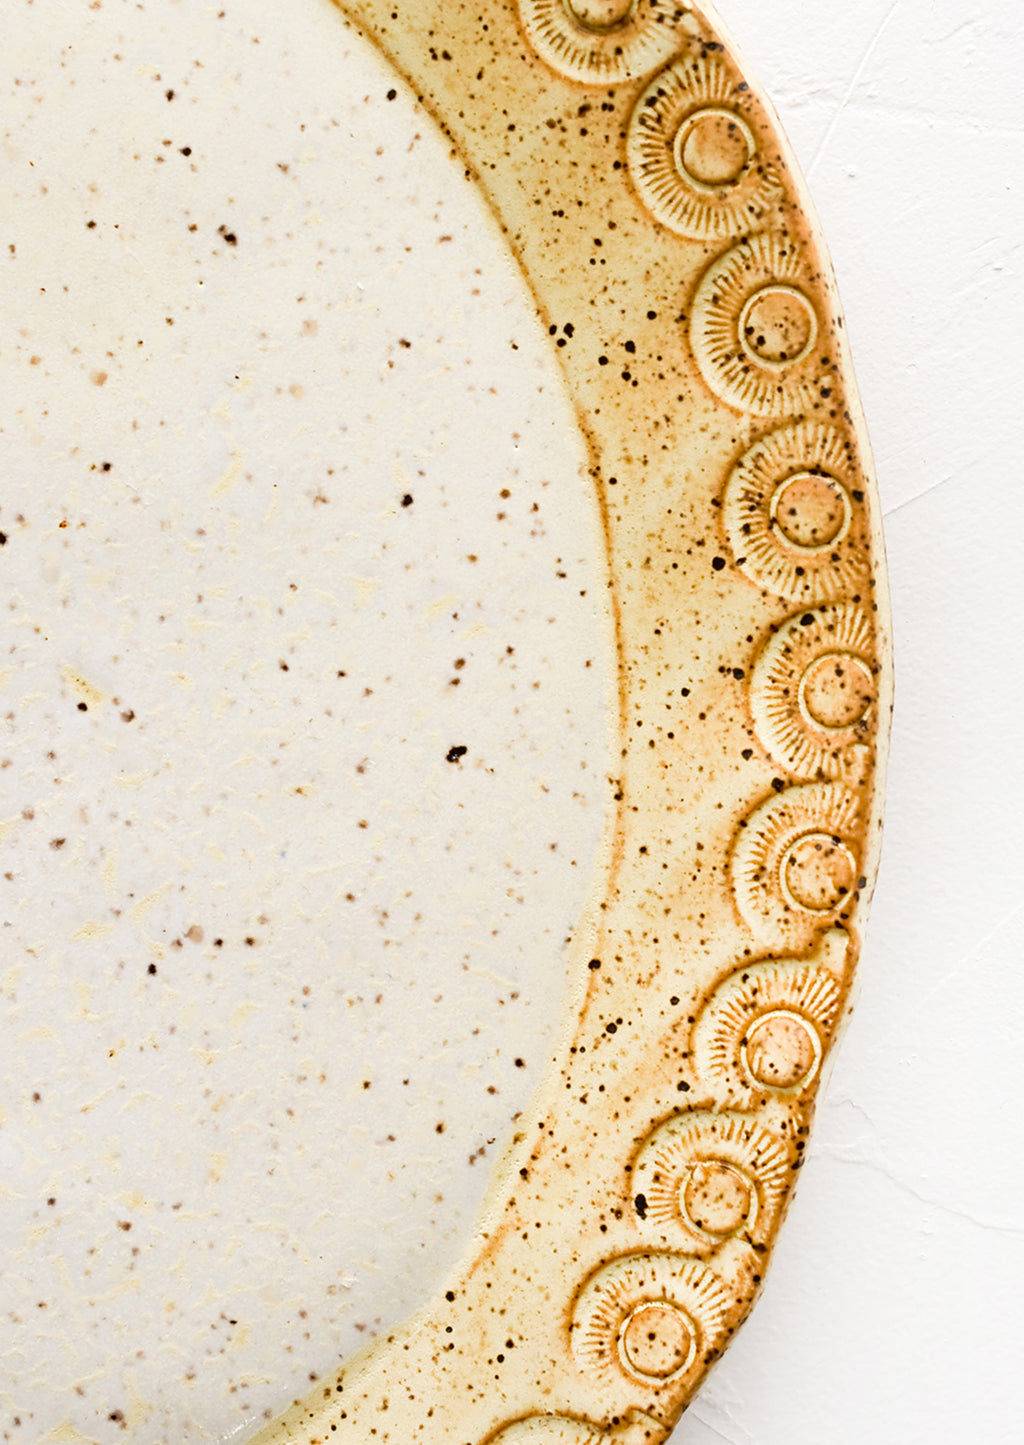 3: Detailed rim etching on ceramic platter.